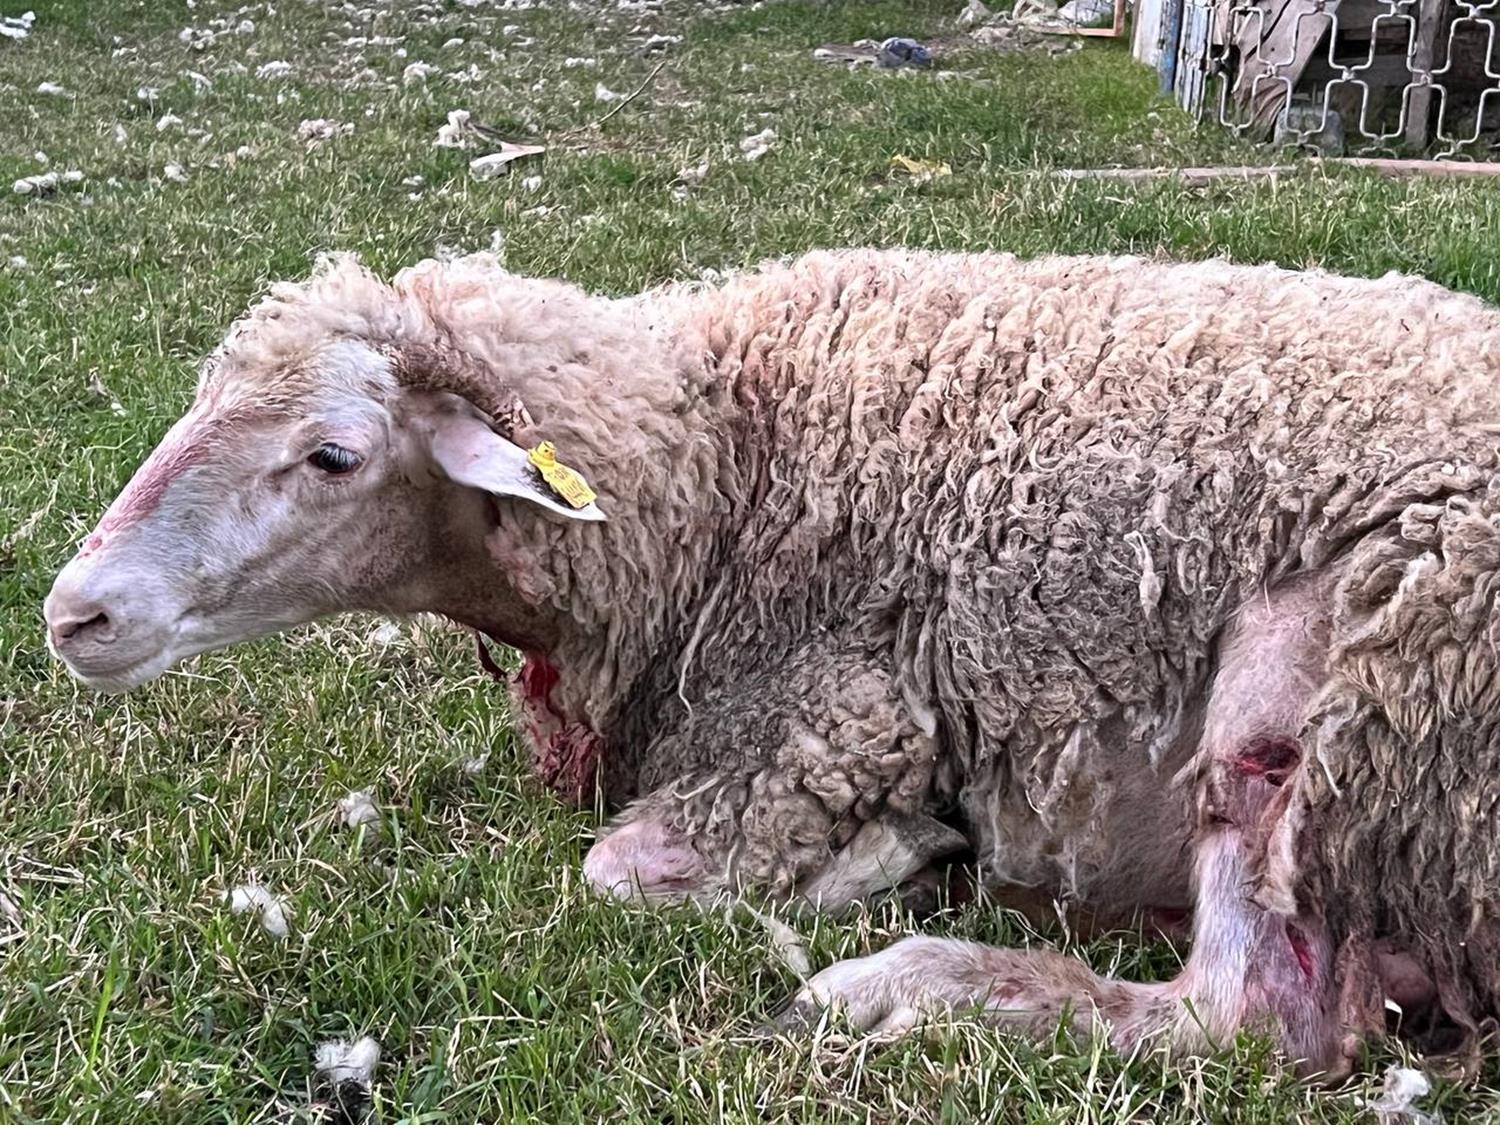 Arnavutky'de koyunlara sokak kpekleri saldrd